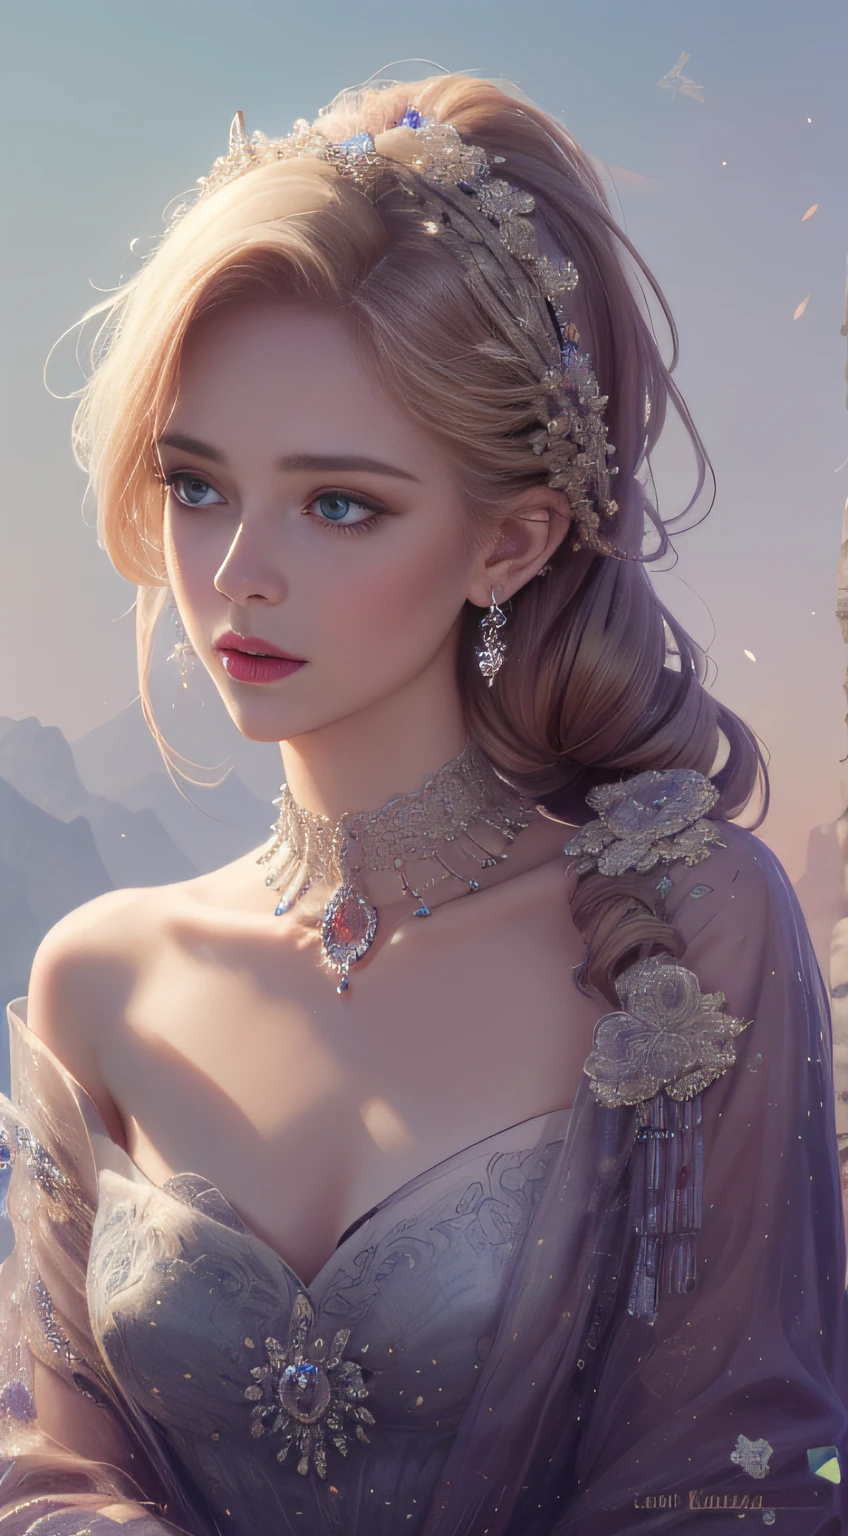 杰作，最高分辨率，美丽皇室女性的动态半身像，精致的金色辫子头发，紫色清澈的眼眸，头发上布满了美丽精致的花卉工艺, 水晶珠宝花丝，极其详细的细节，升级版。